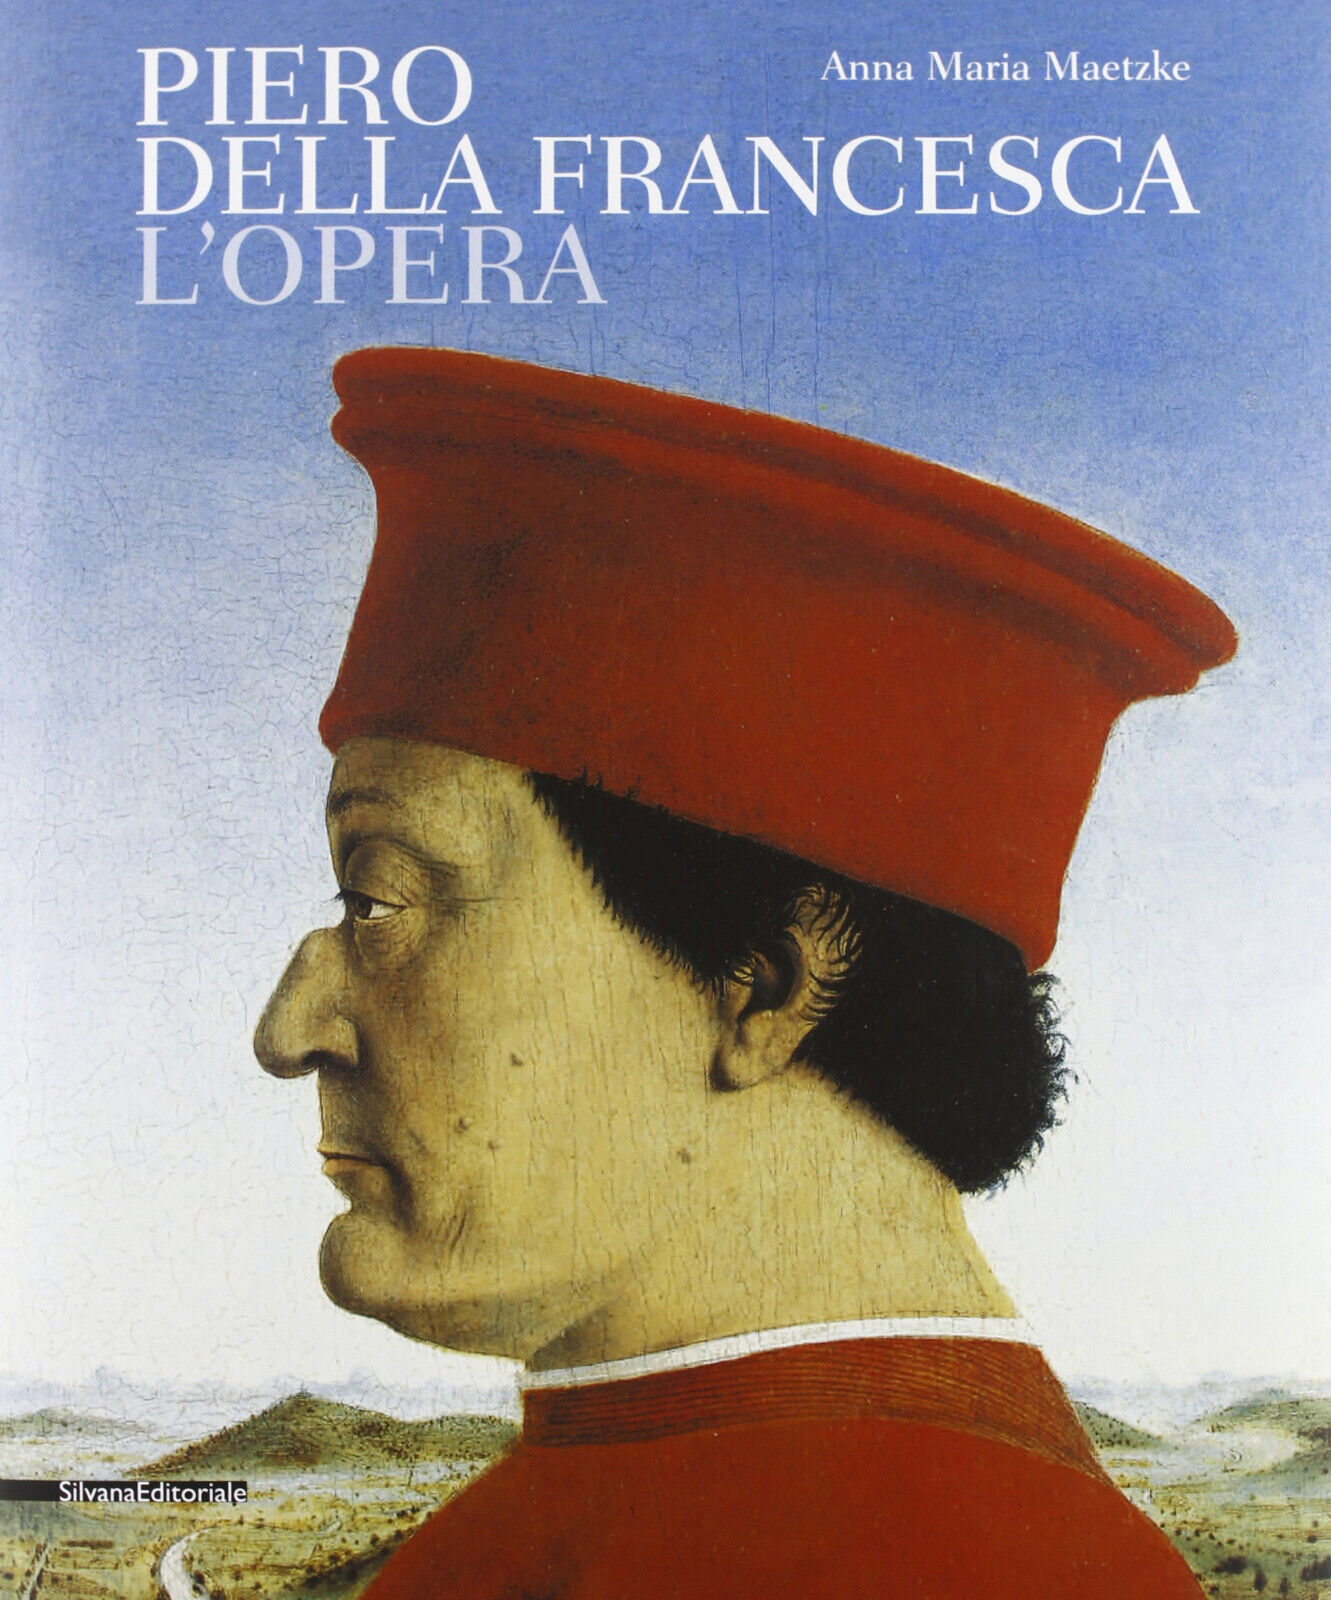 Piero della Francesca. L'opera - A. M. Maetzke - Silvana, 2013